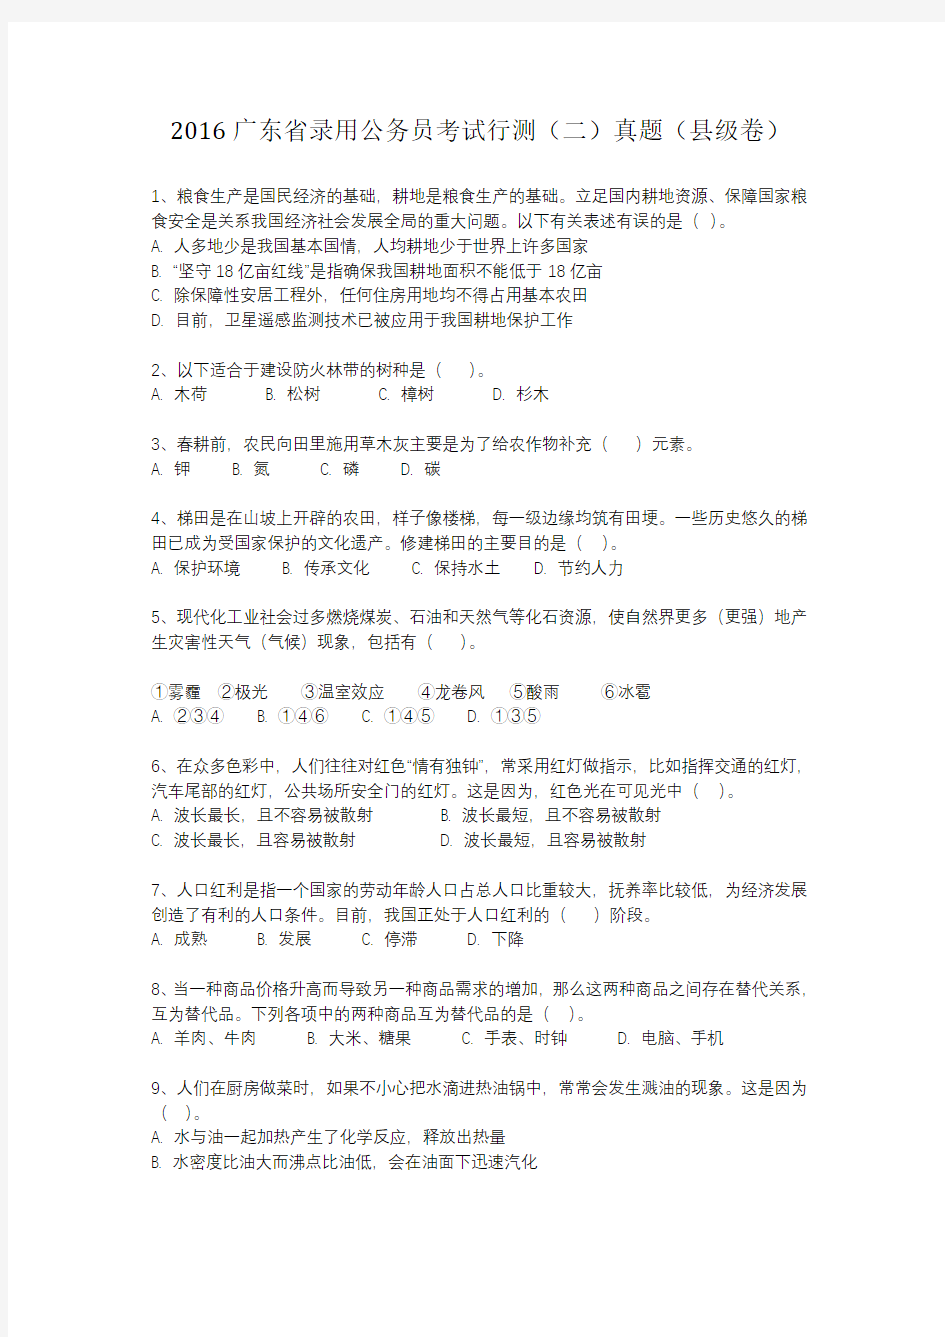 2016年广东公务员县级考试《行测二》真题试卷及解析(整理完整版,可直接打印)